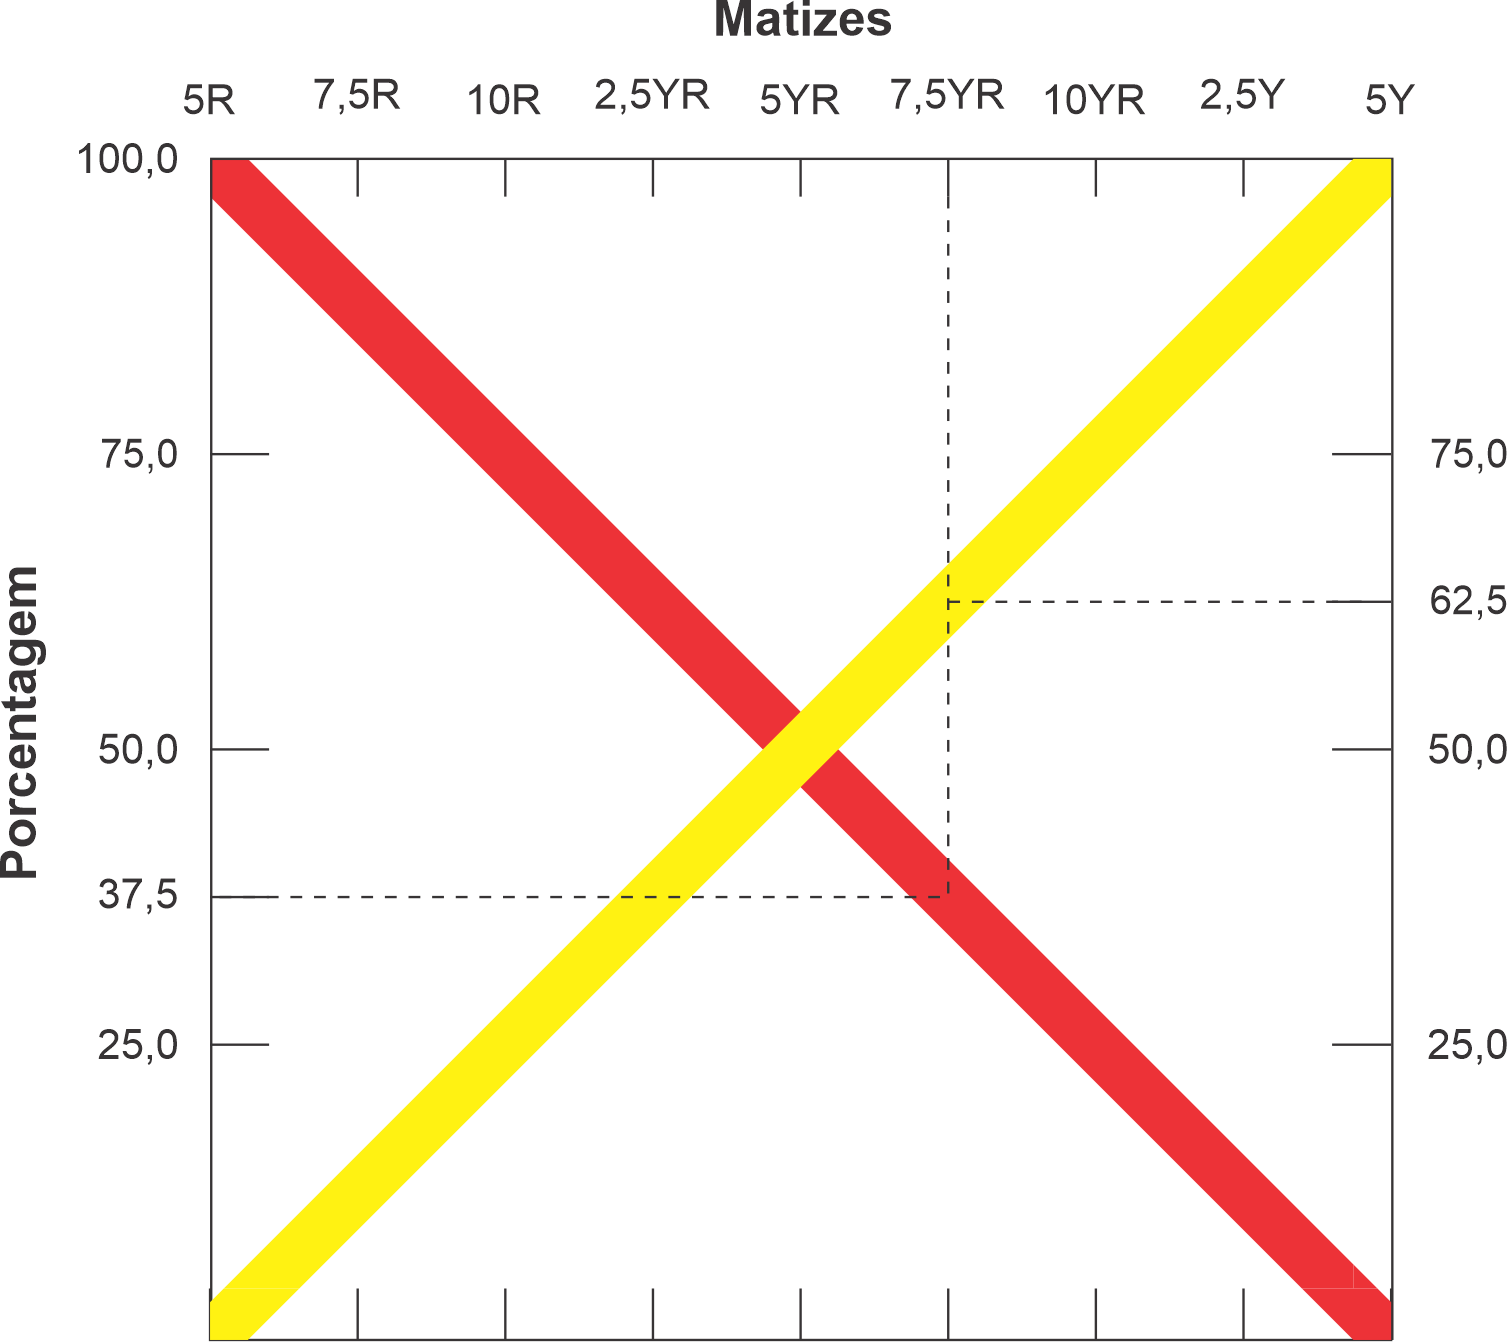 Figura 1. Proporções de cores amarela e vermelha nos matizes de 5R até 5Y.